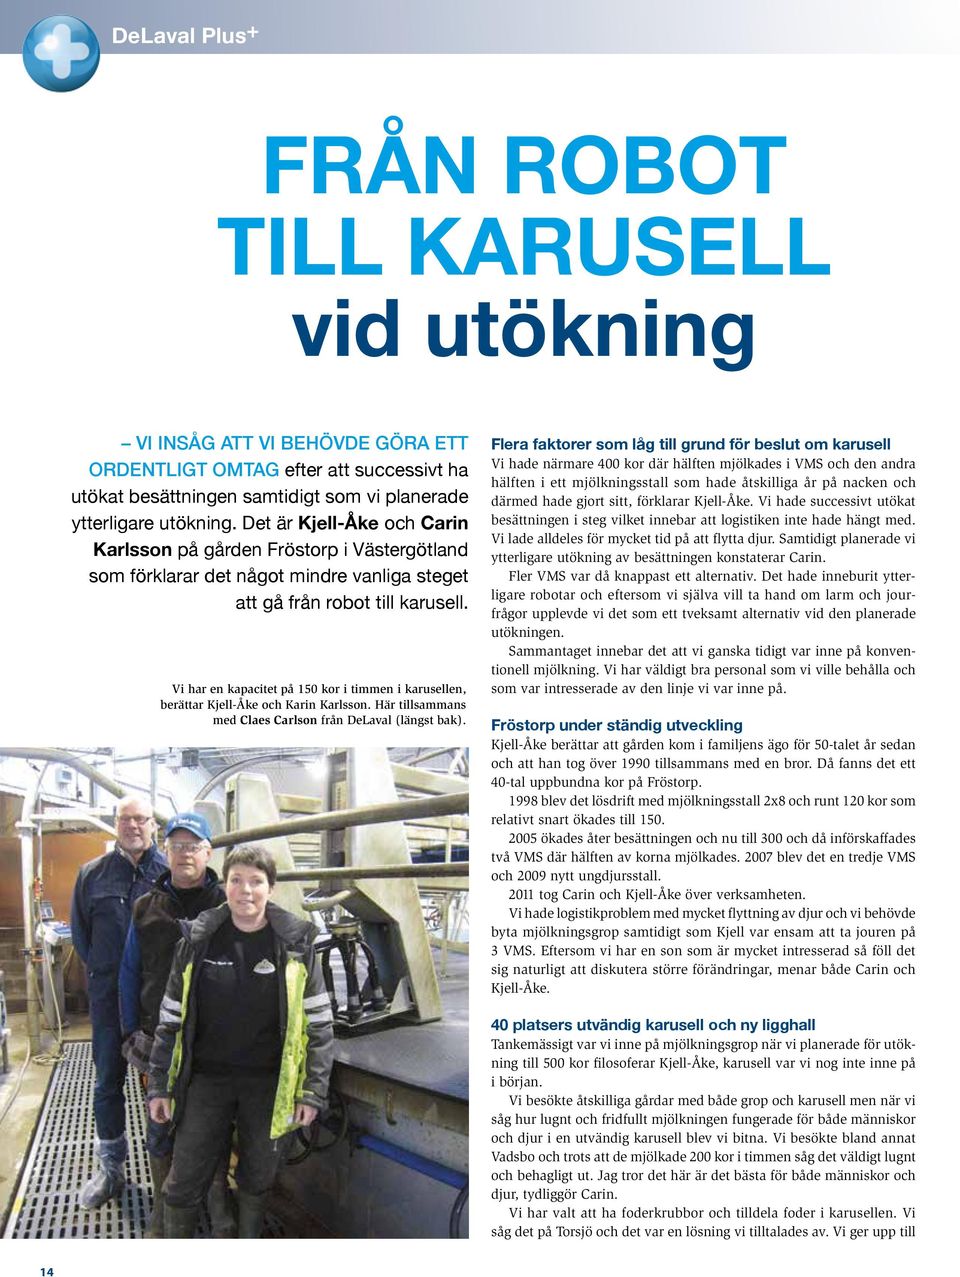 Vi har en kapacitet på 150 kor i timmen i karusellen, berättar Kjell-Åke och Karin Karlsson. Här tillsammans med Claes Carlson från DeLaval (längst bak).